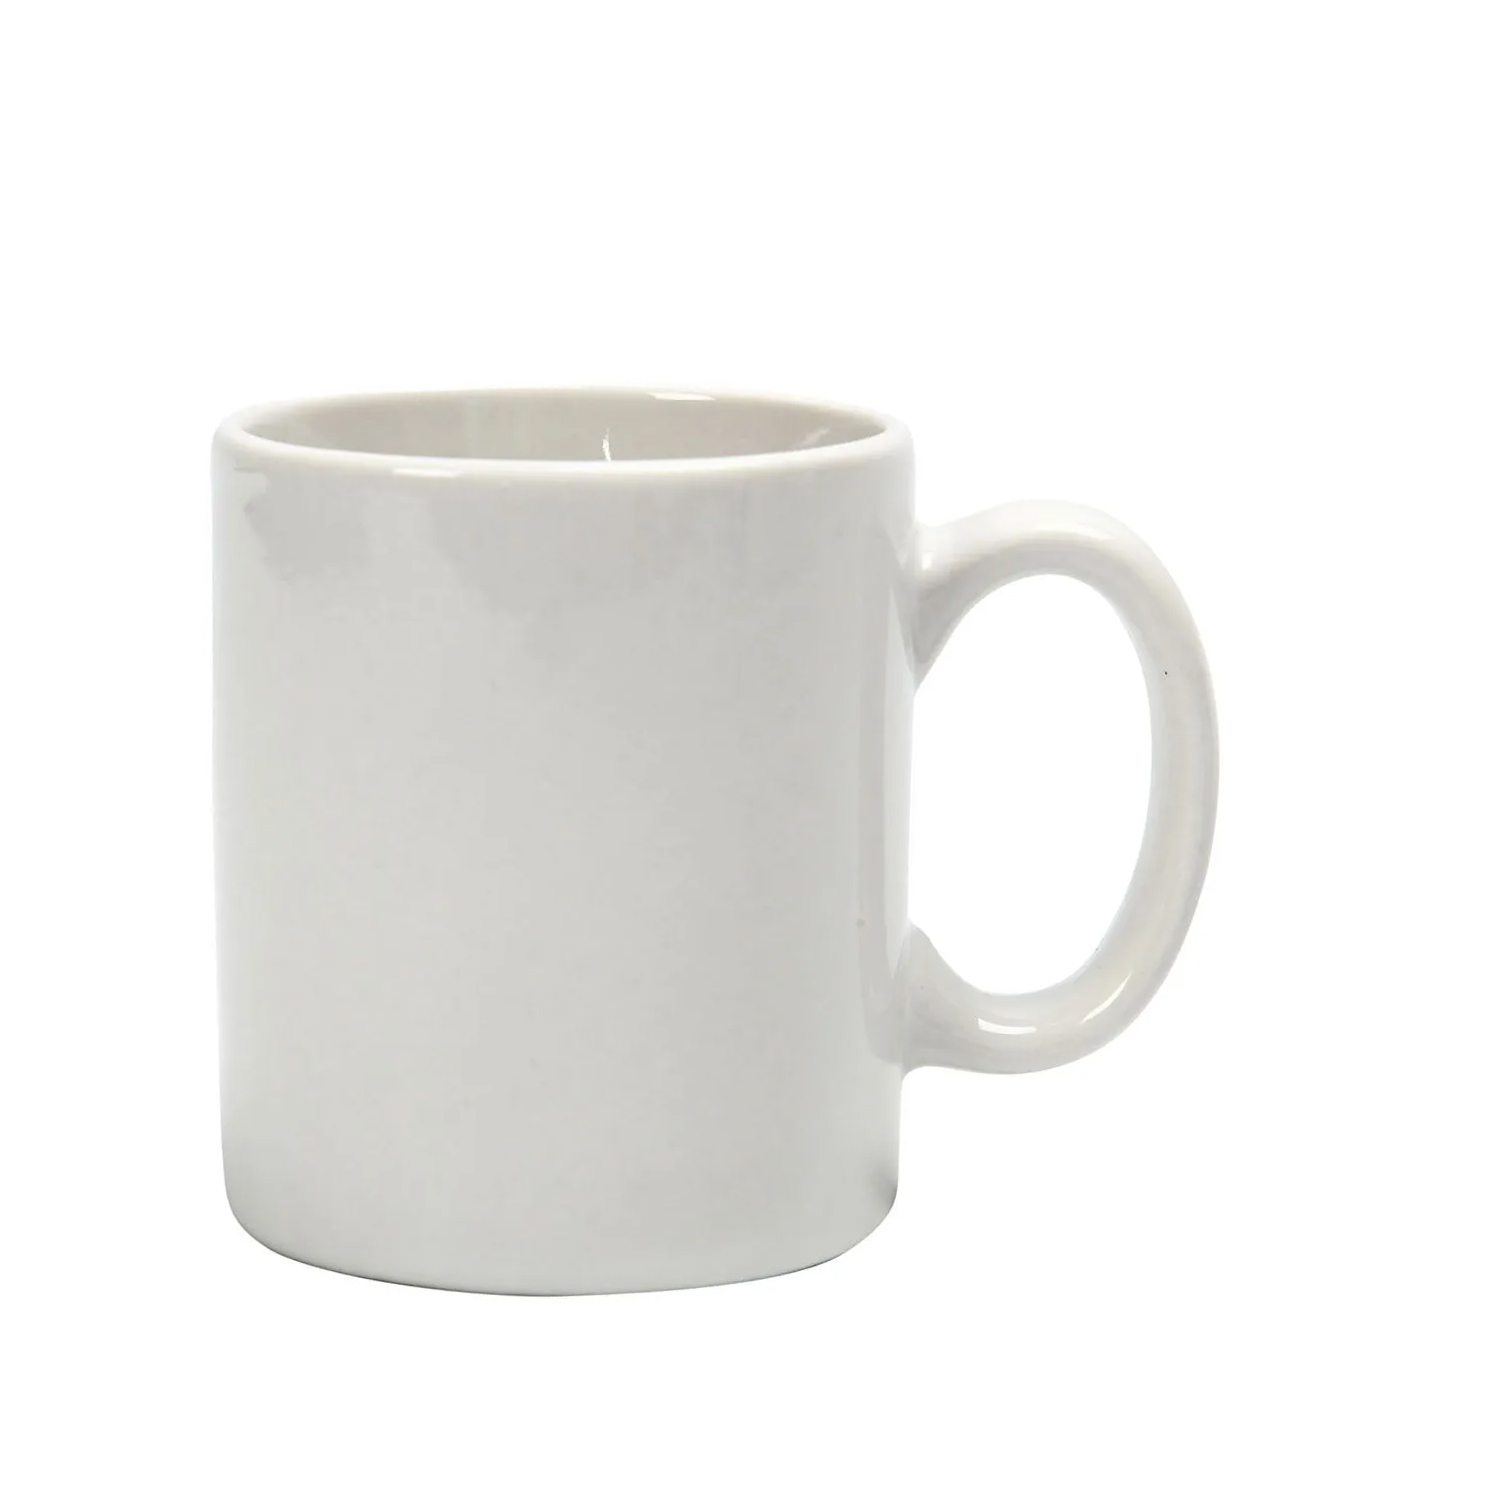 NEU Porzellanbecher / Kaffeebecher für 120 ml, H: 7 cm, D: 6 cm, 1 Stück